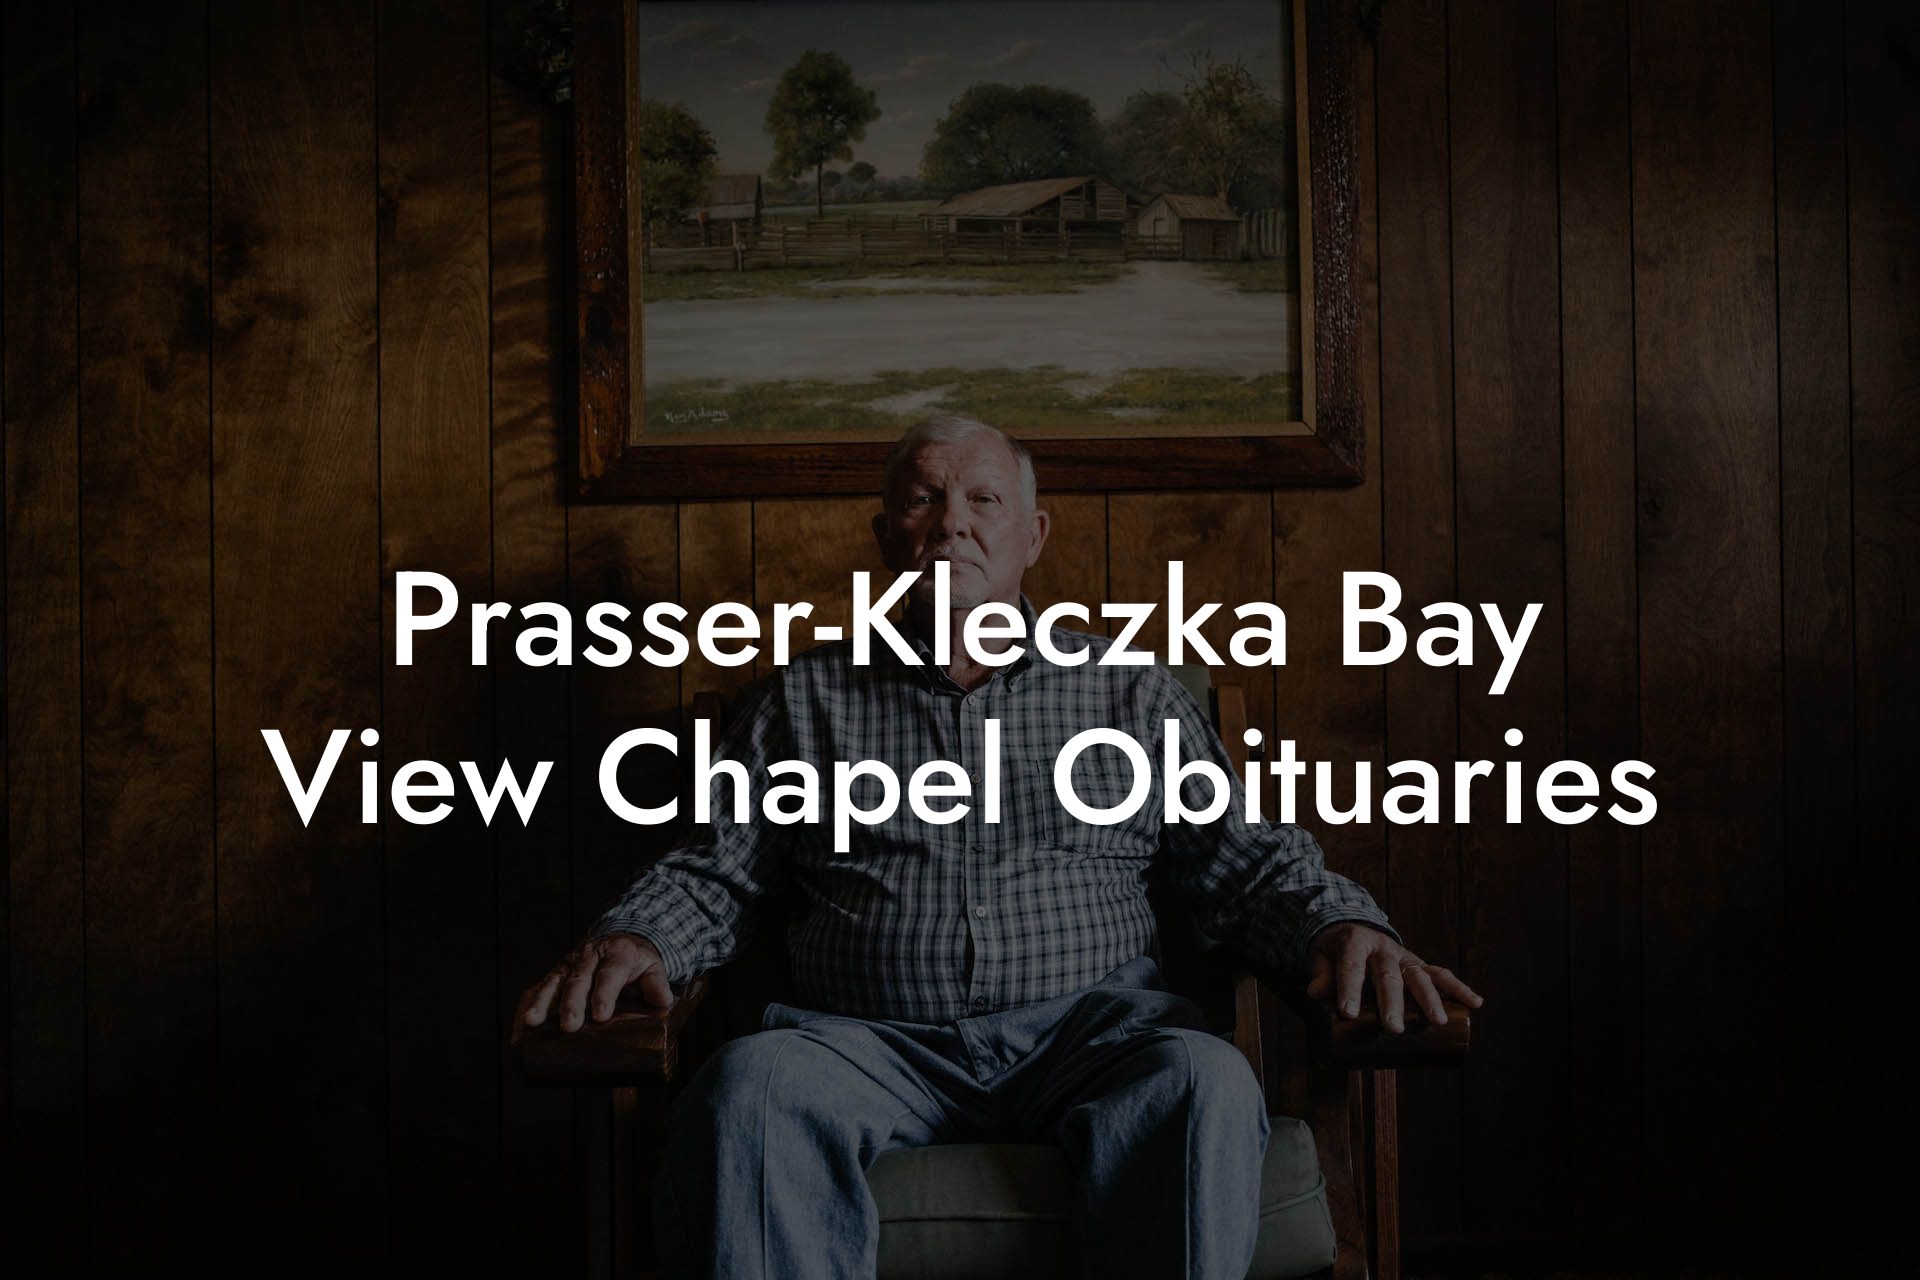 Prasser-Kleczka Bay View Chapel Obituaries